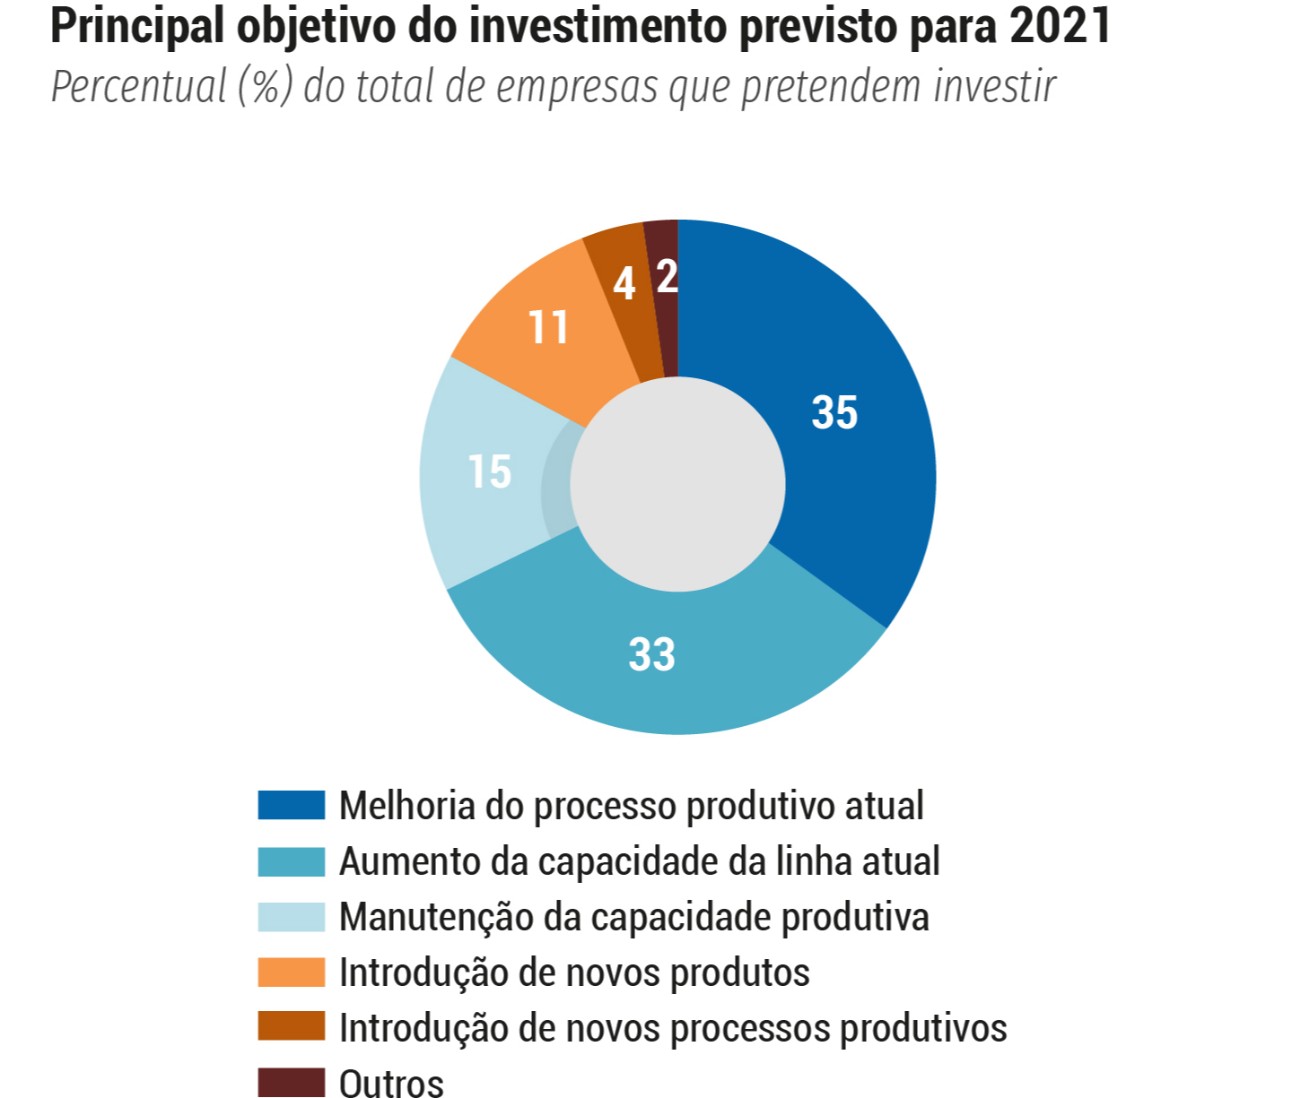 82% das grandes empresas pretendem investir em 2021